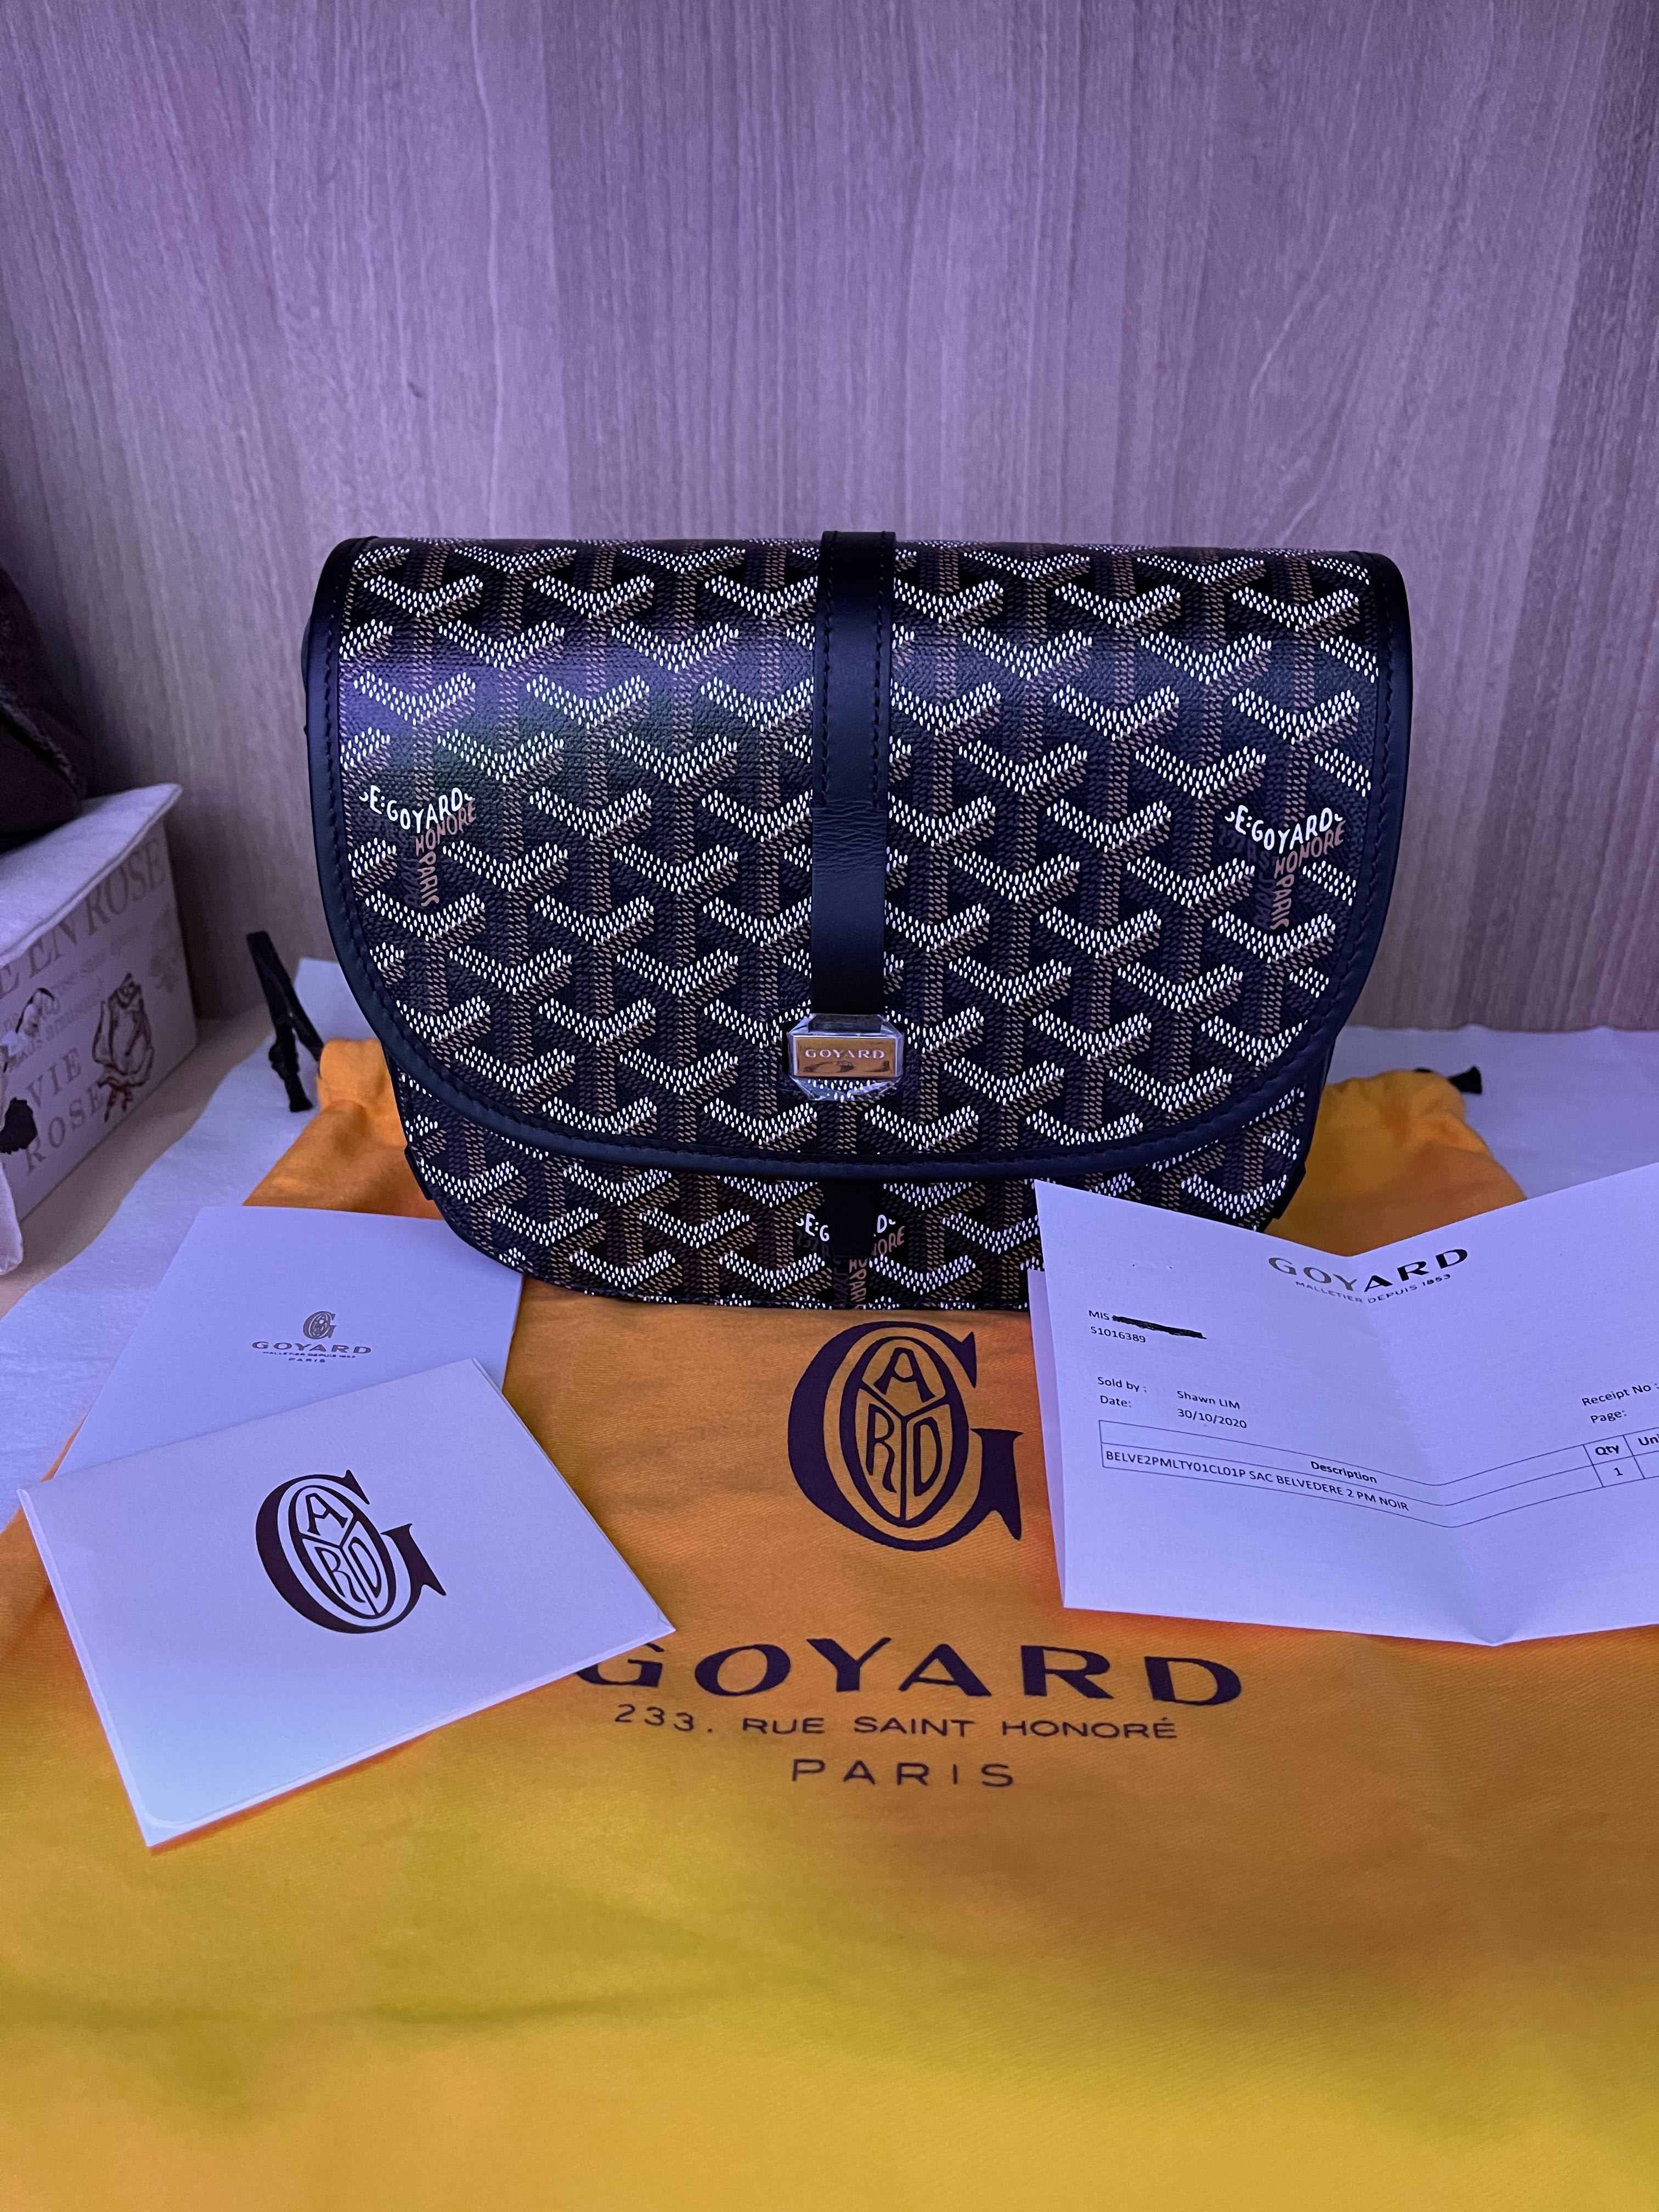 Goyard Belvedere 2 MM, Luxury, Bags & Wallets on Carousell